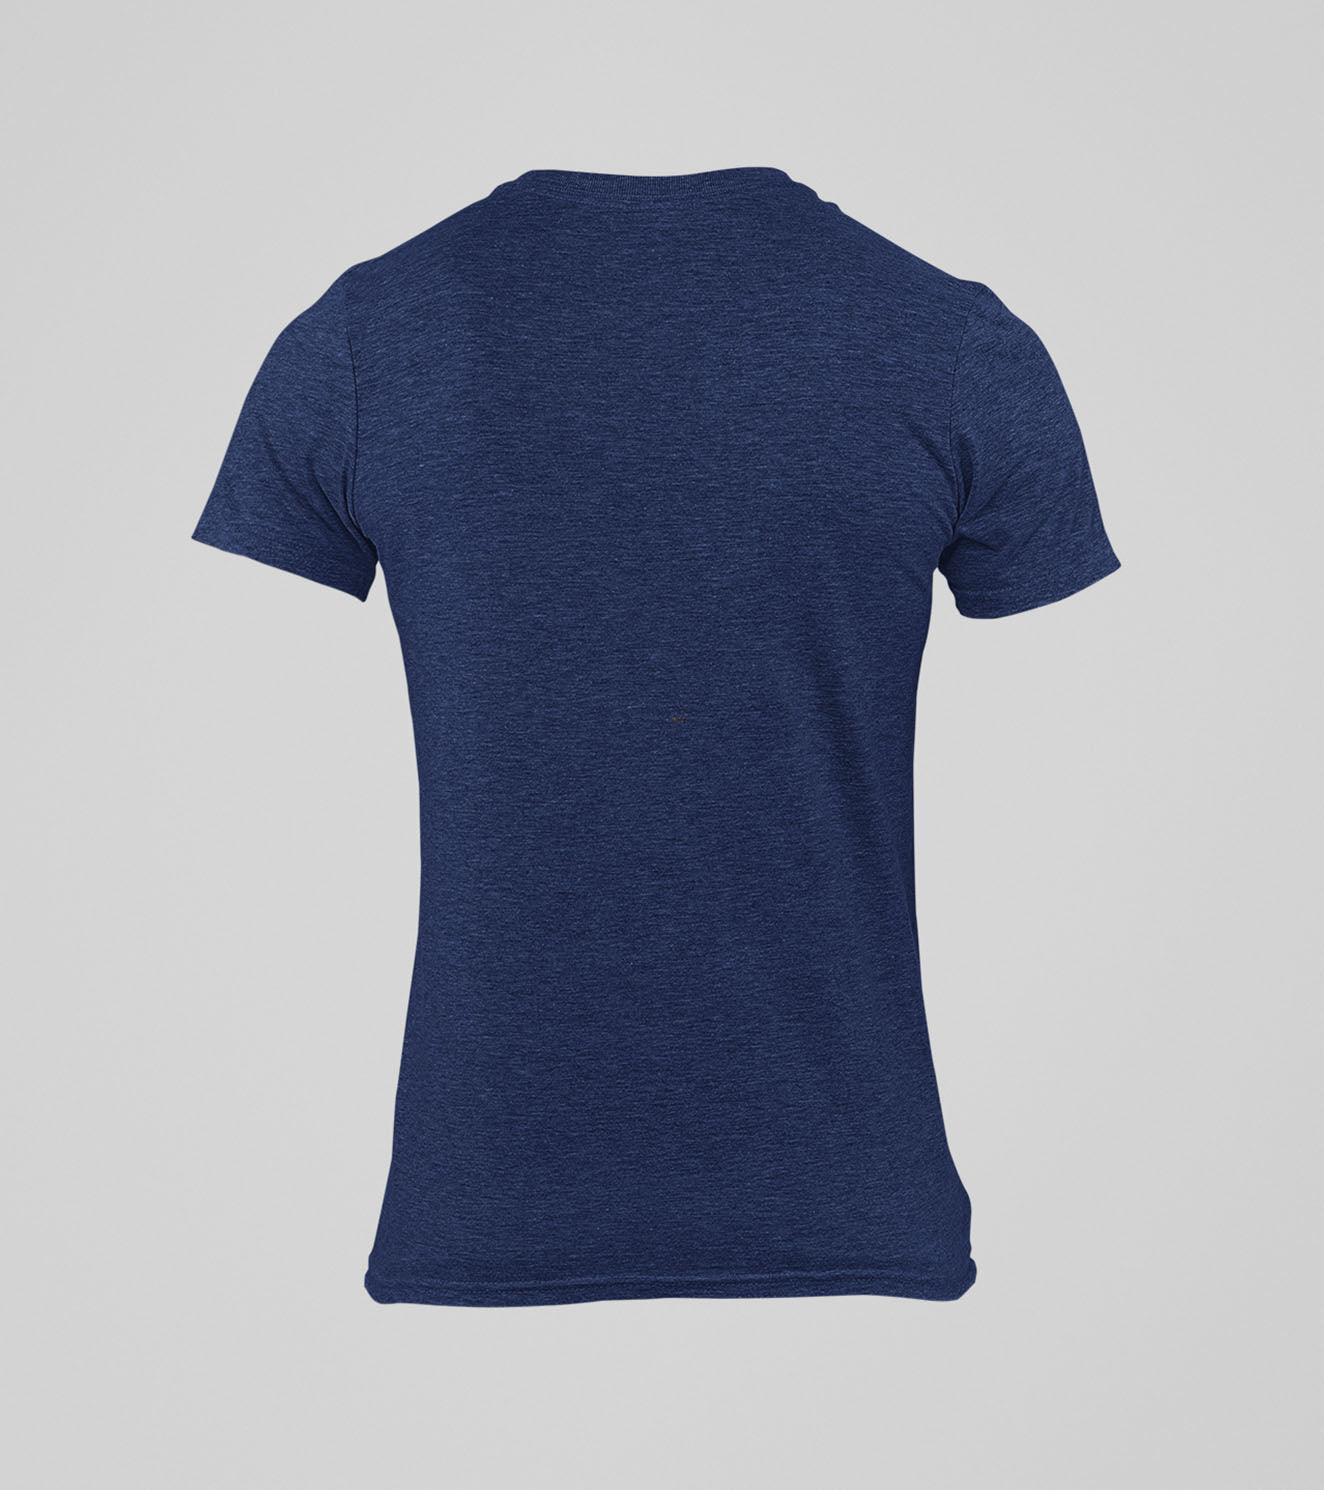 Men's "Legend" T-Shirt( Navy Blue) - wodarmour